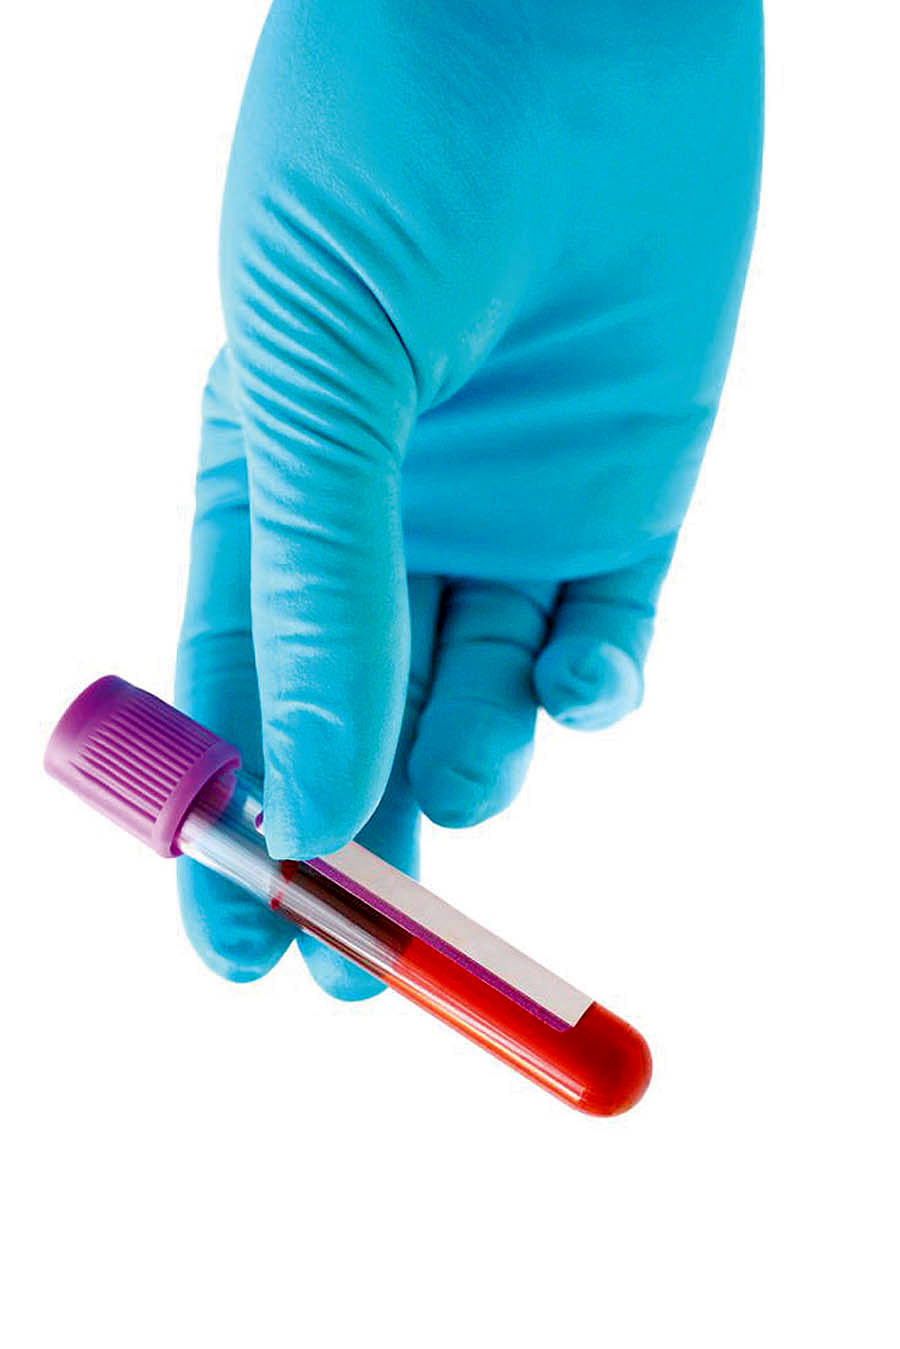 16 سوال مهم درباره آزمایش خون